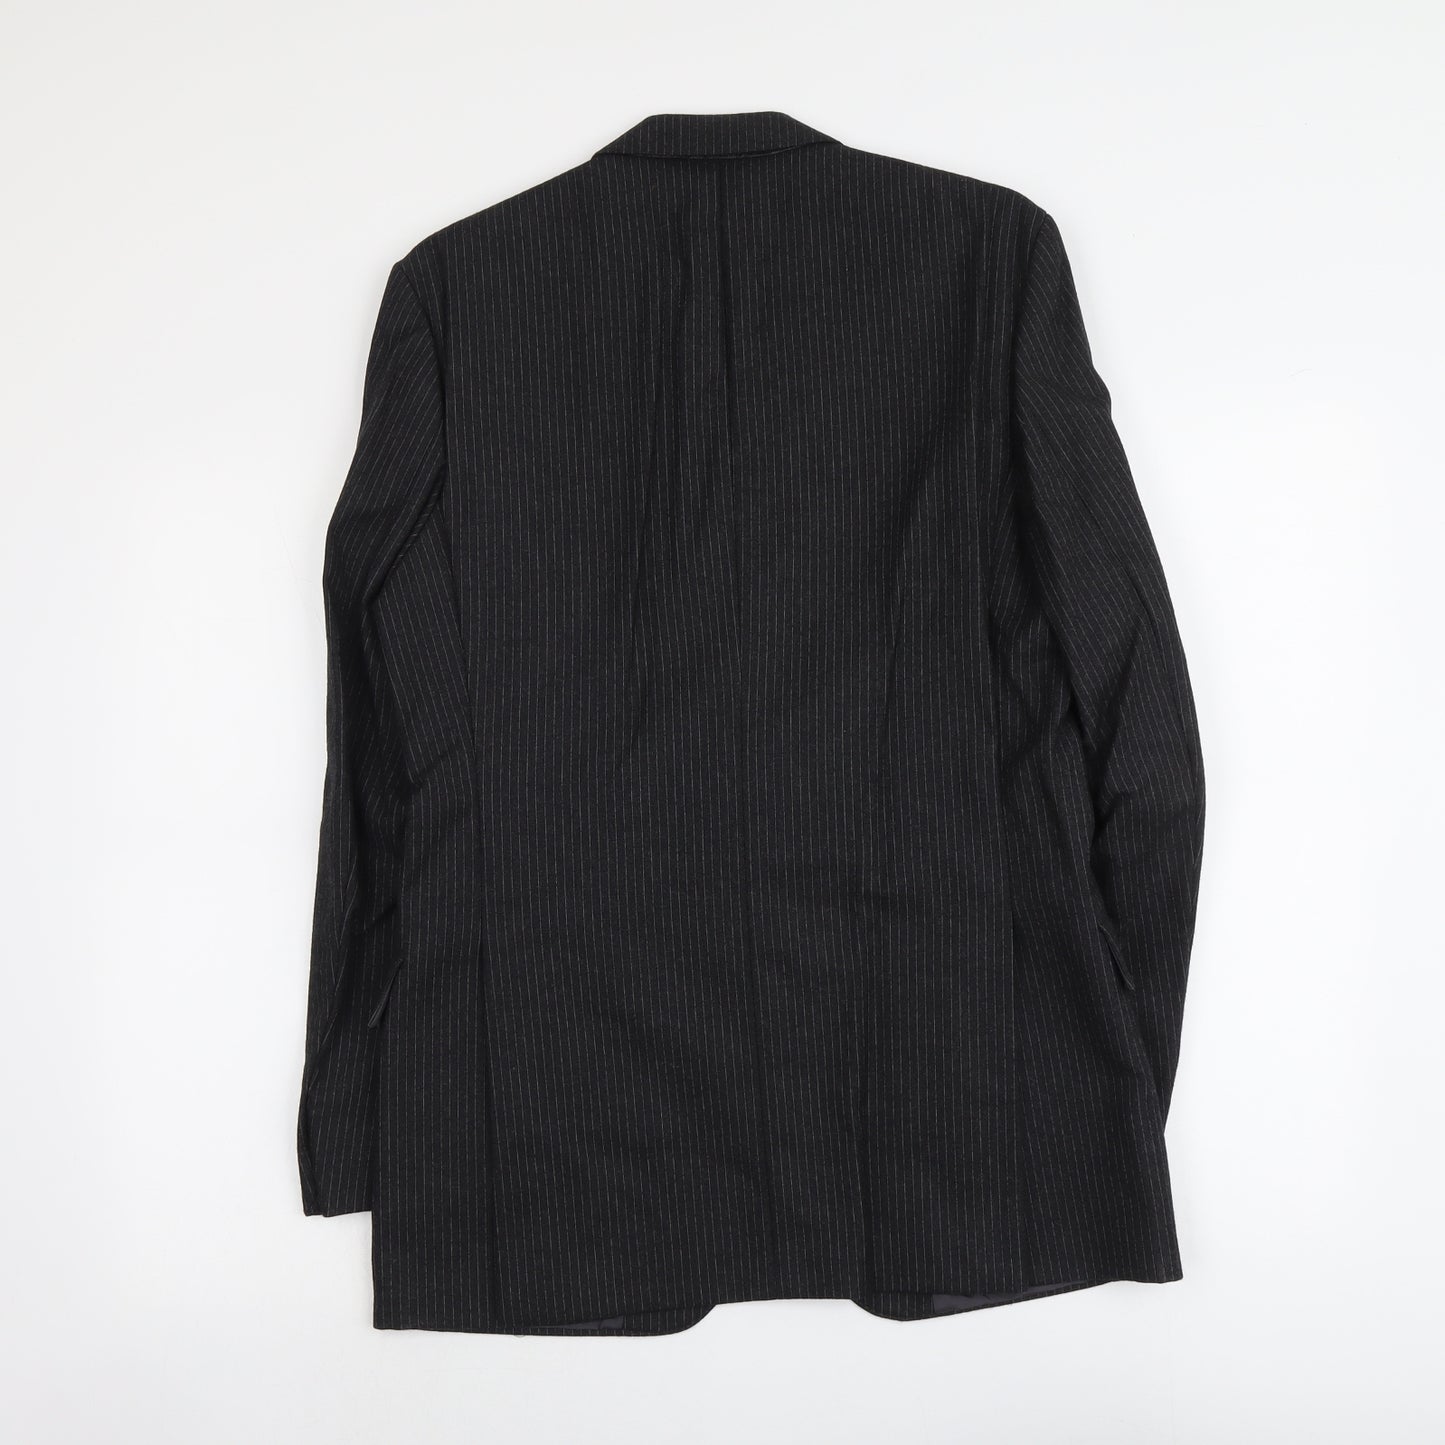 Gent Mens Grey Striped Polyester Jacket Suit Jacket Size M Regular